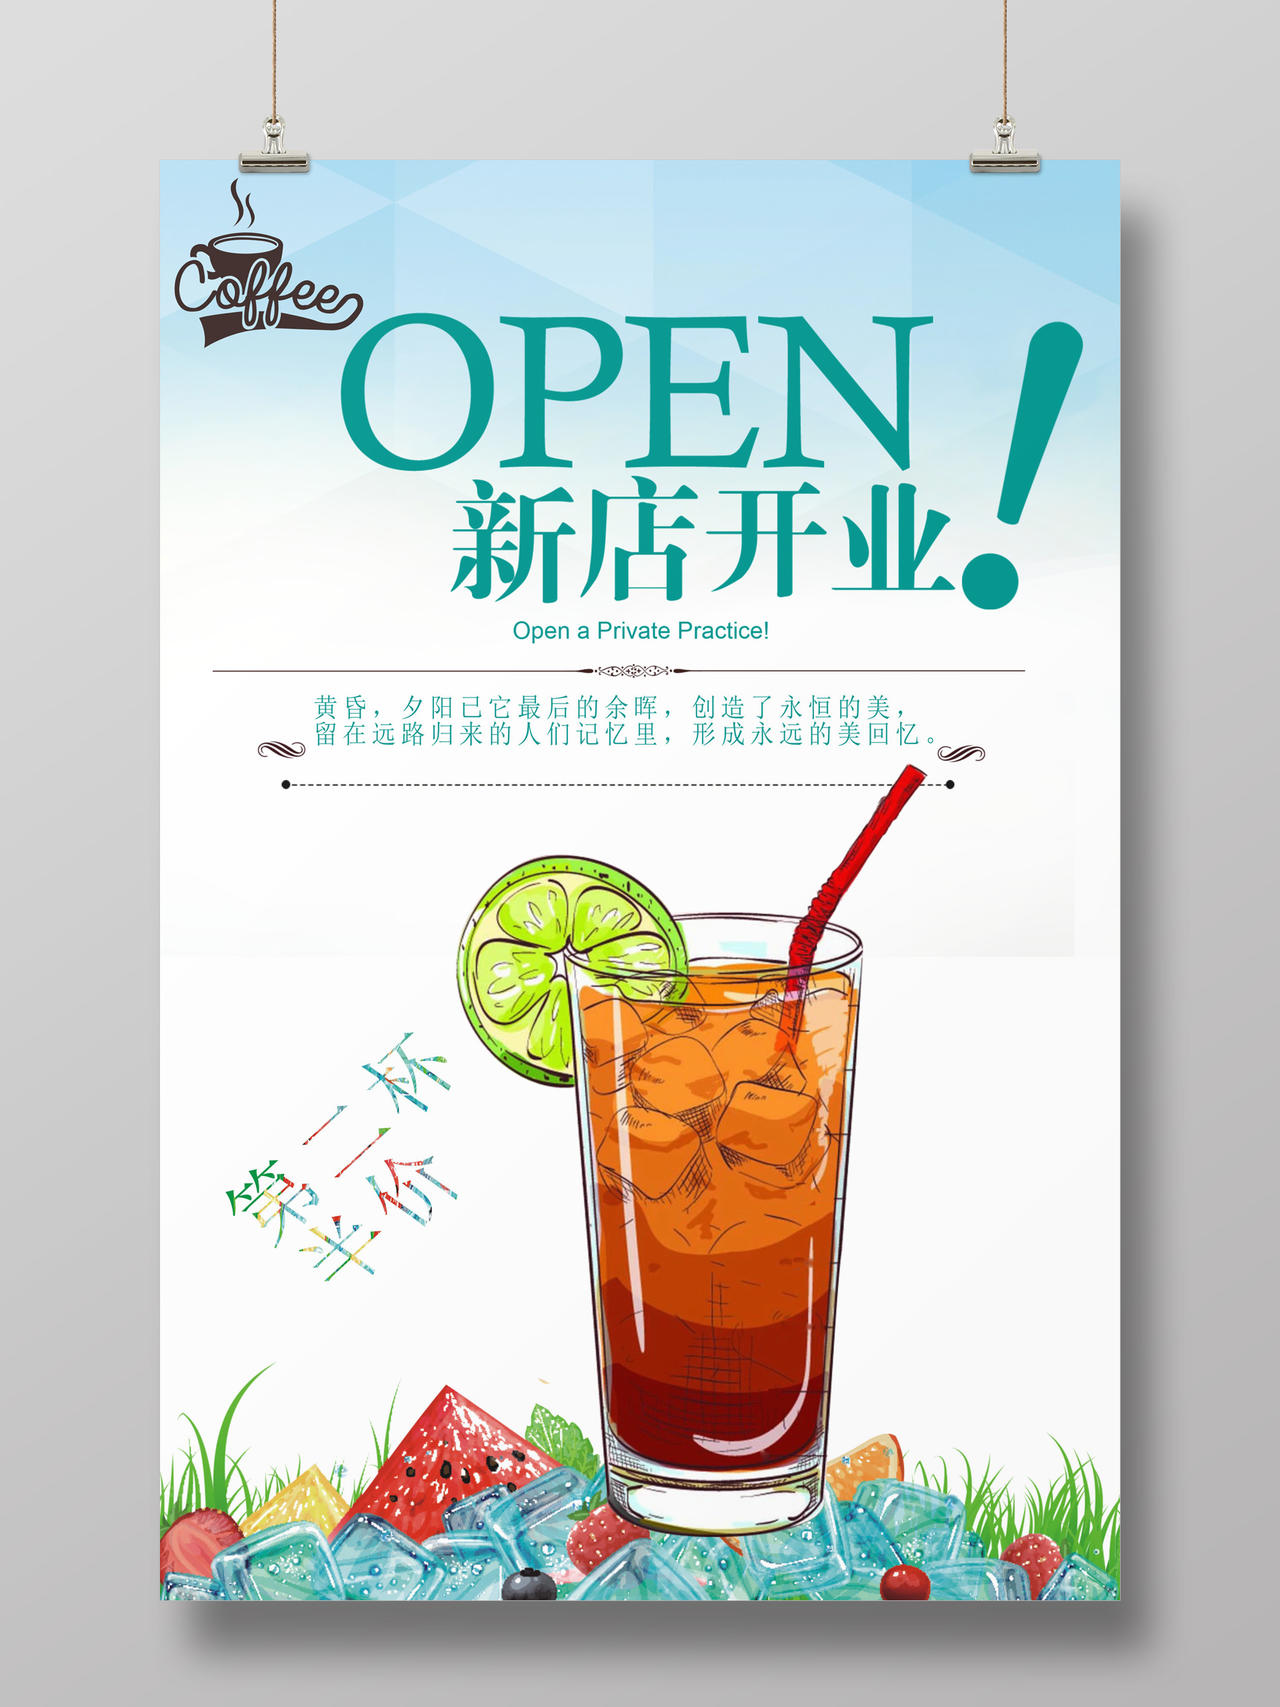 清新柠檬冷饮奶茶店新店开业促销海报第二杯半价